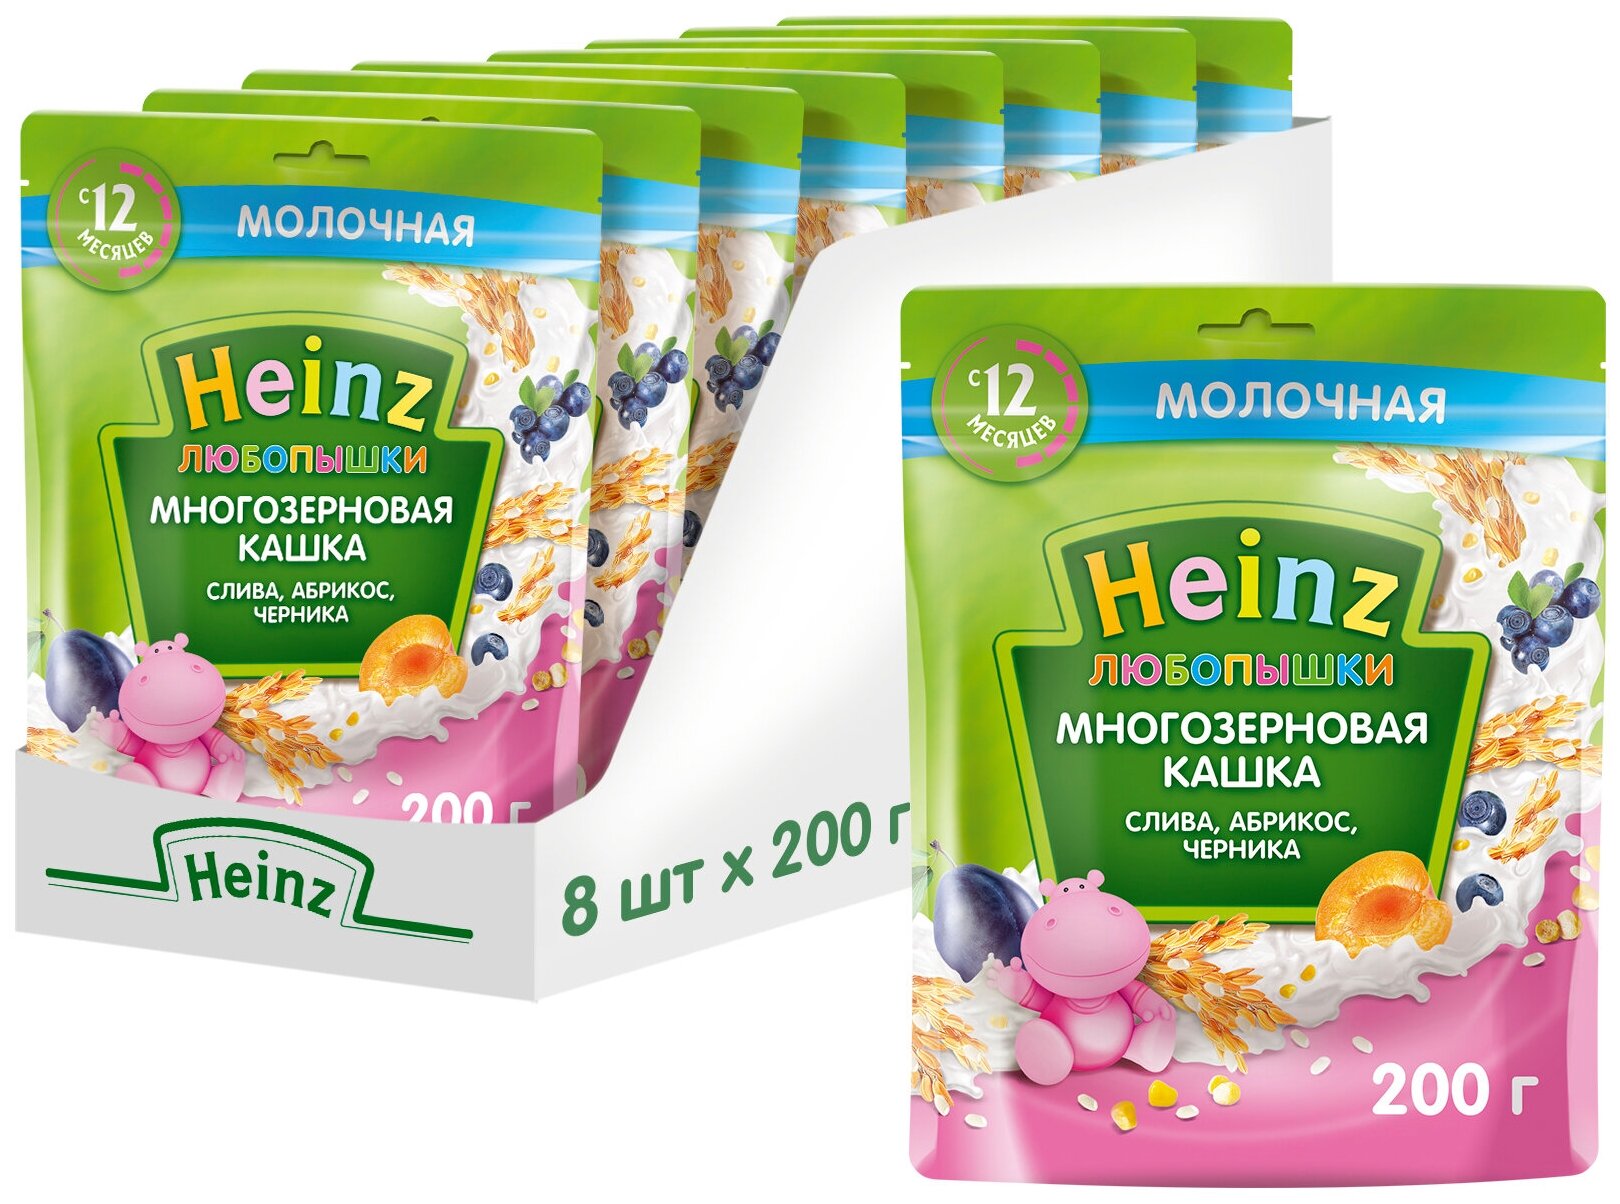 Каша Heinz, Любопышки молочная многозерновая слива, абрикос, черника 200 г - фото №9